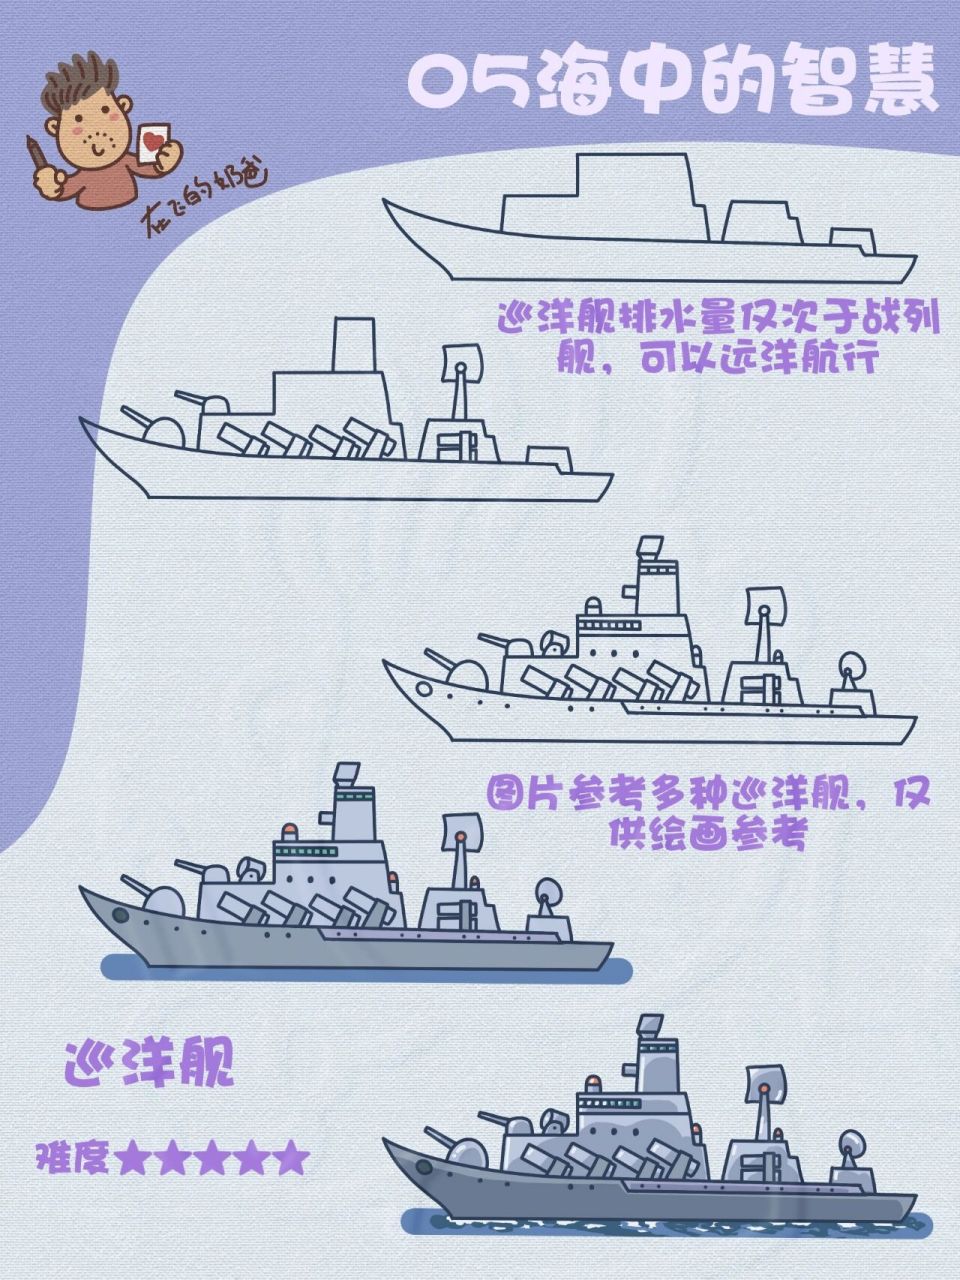 军舰的简笔画法图片